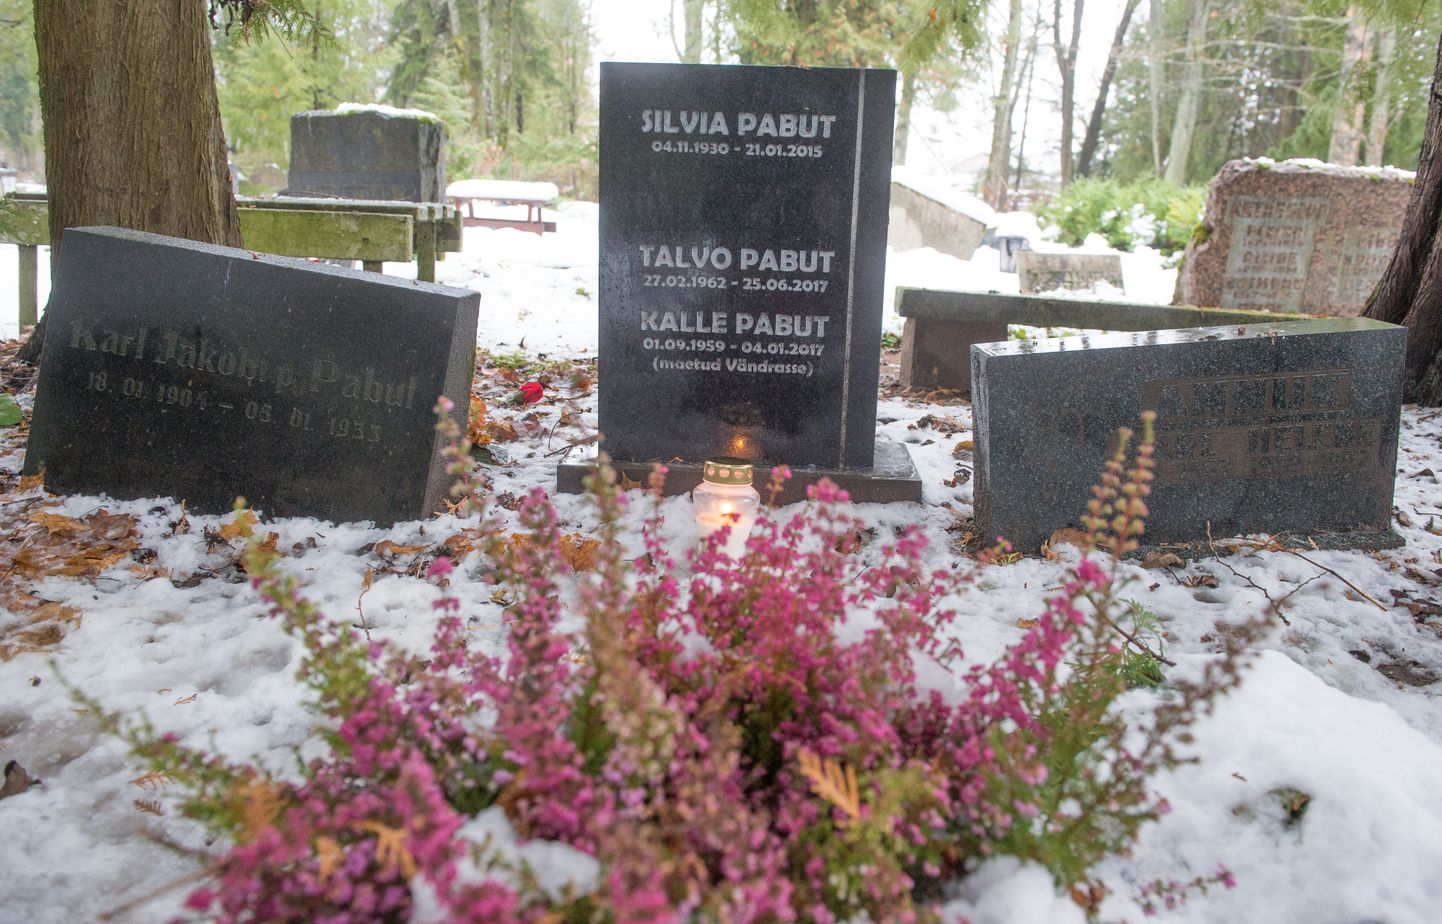 Talvo Pabuti viimne puhkepaik Raadi kalmistul. Hauakivil on ka tema venna Kalle ja ema Silvia sünni ja surma kuupäev. Ema suri 2015. aasta jaanuaris, vend tänavu jaanuaris.